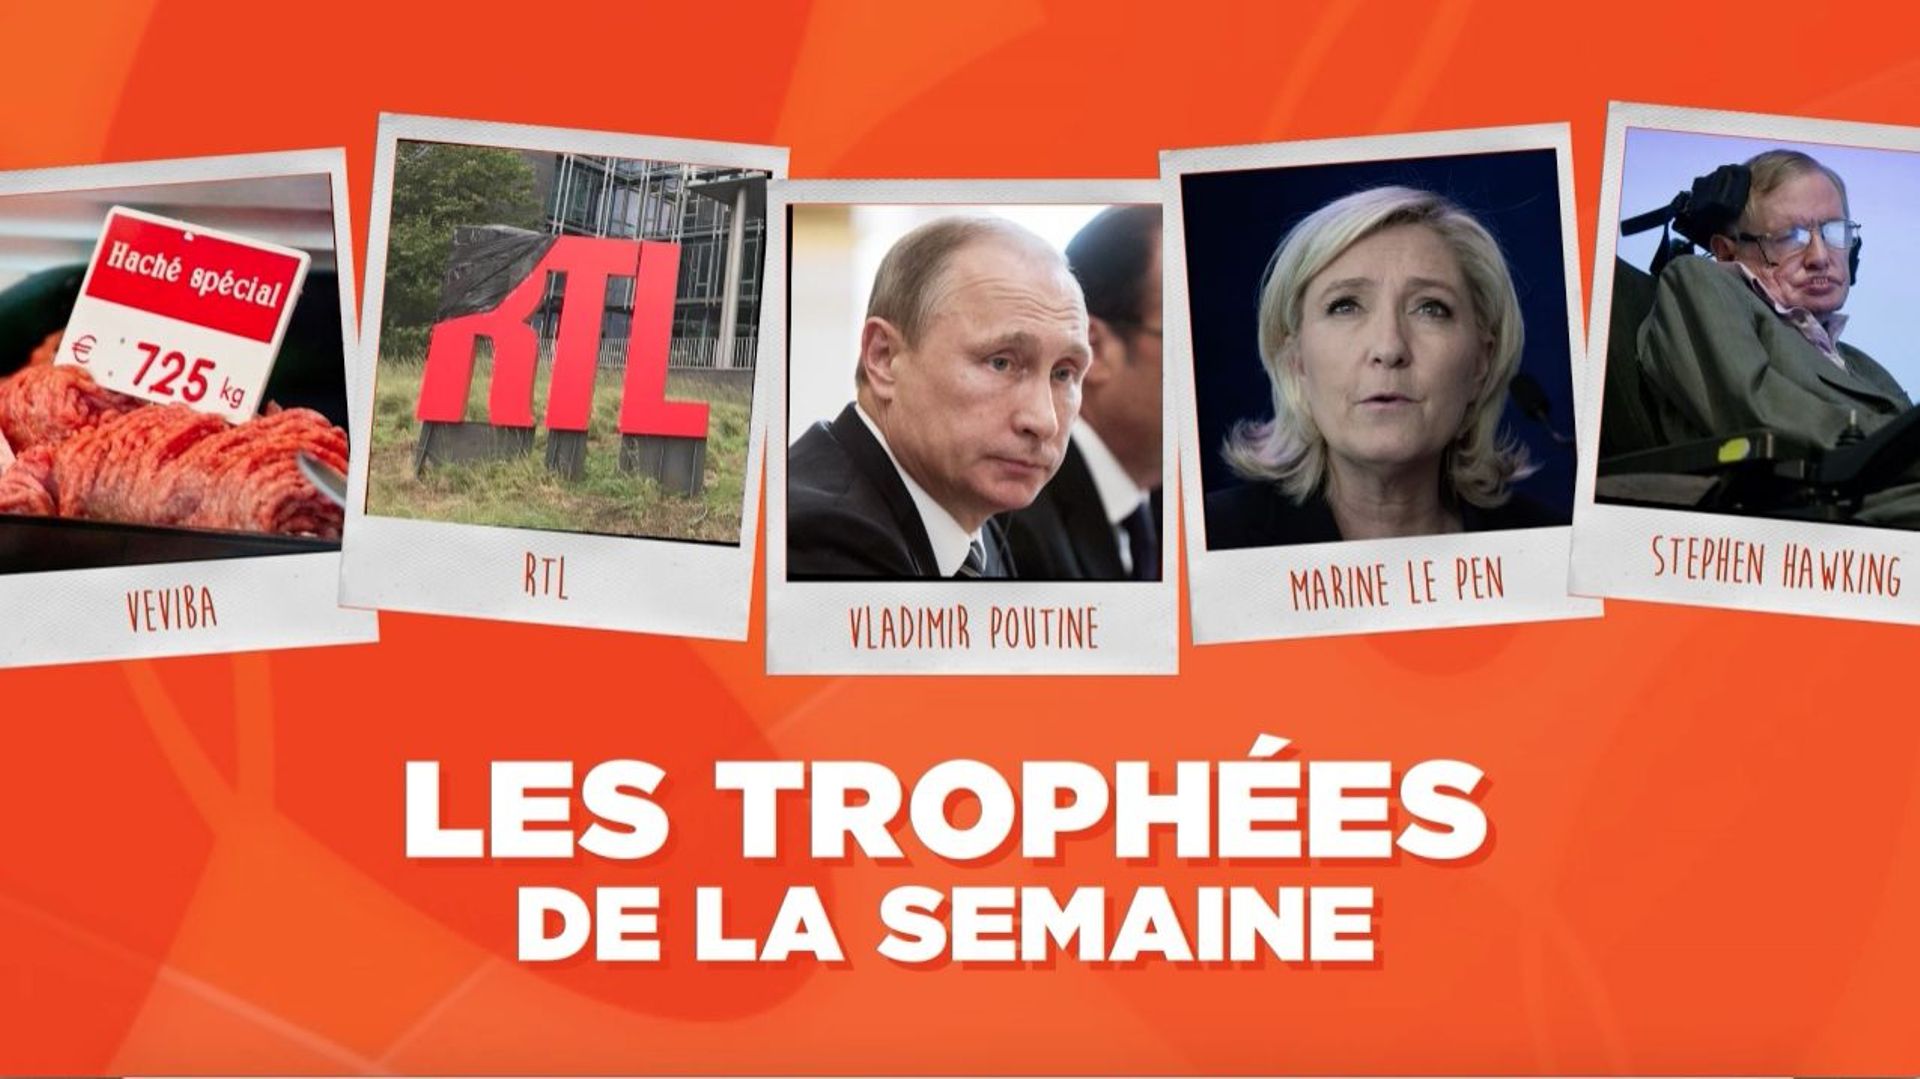 Les Trophées de la Semaine : Veviba, RTL, Vladimir Poutine, Marine Le Pen et Stephen Hawking